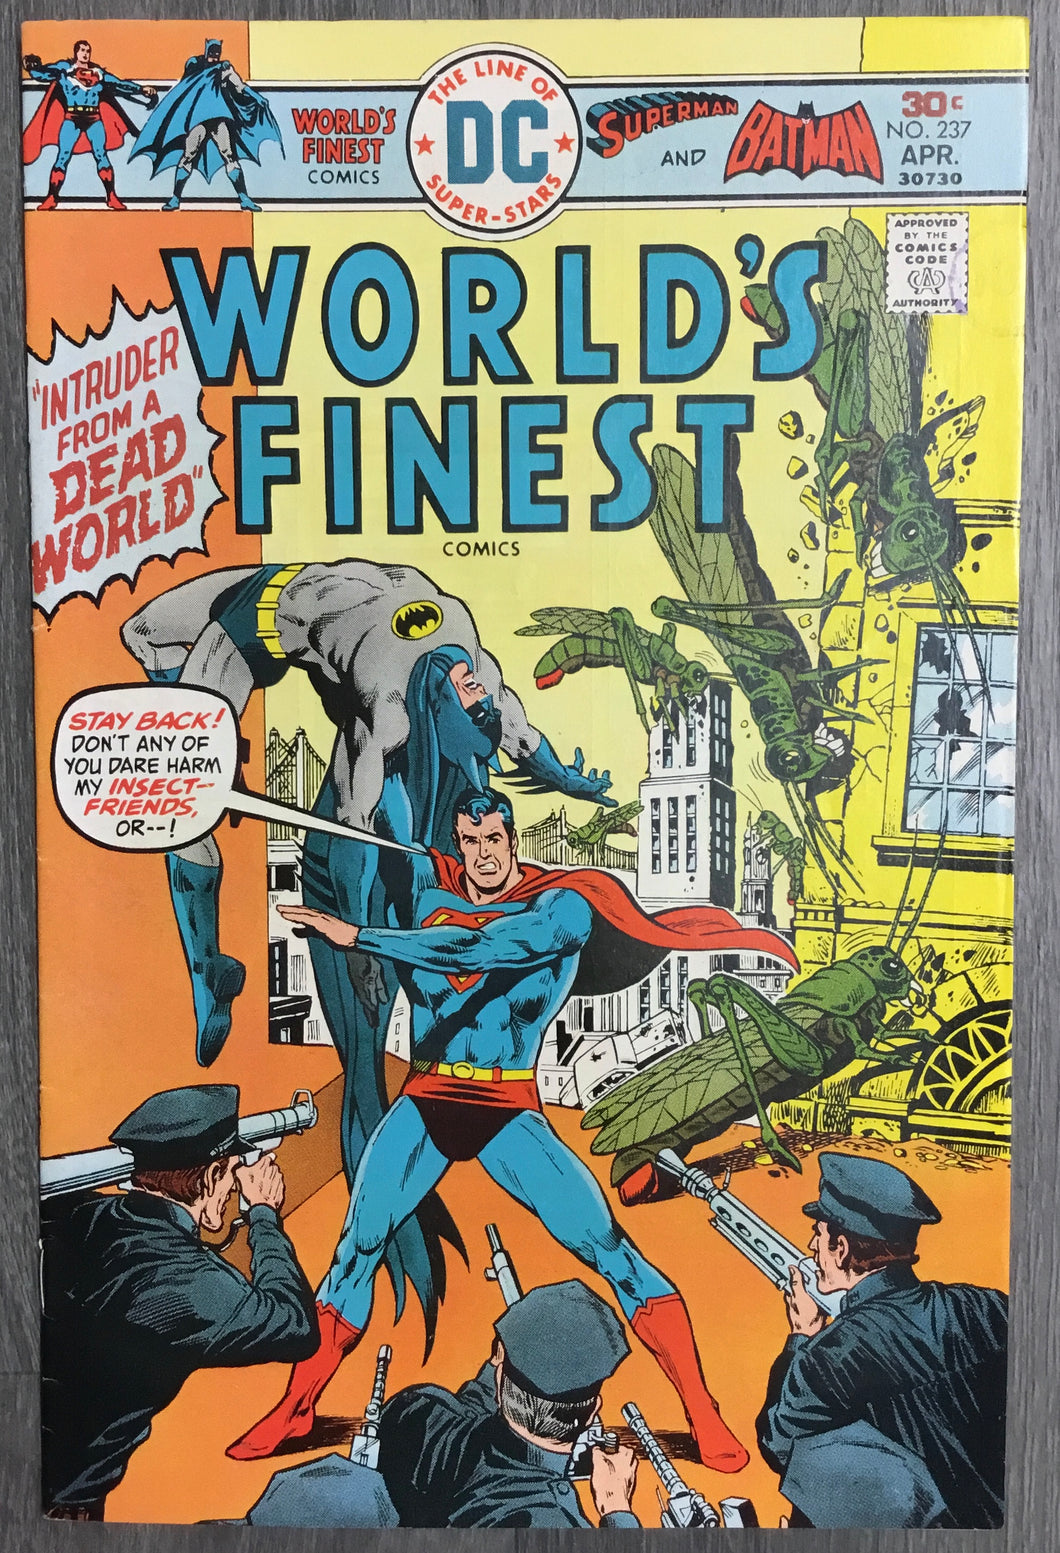 World’s Finest Comics No. #237 1976 DC Comics